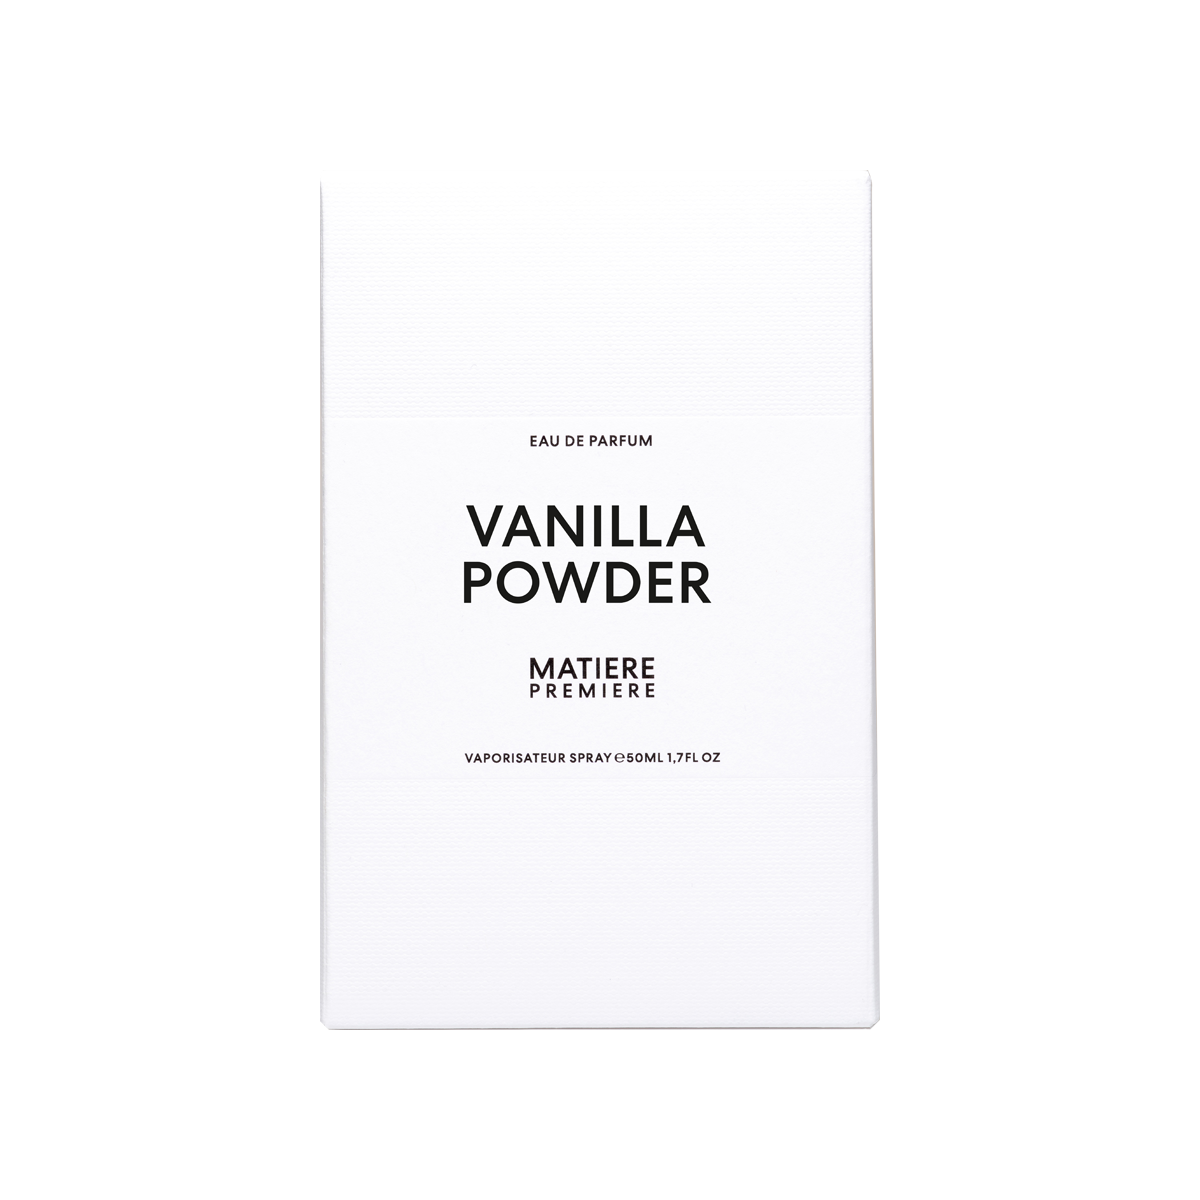 Matiere Premiere - Vanilla Powder Eau de Parfum